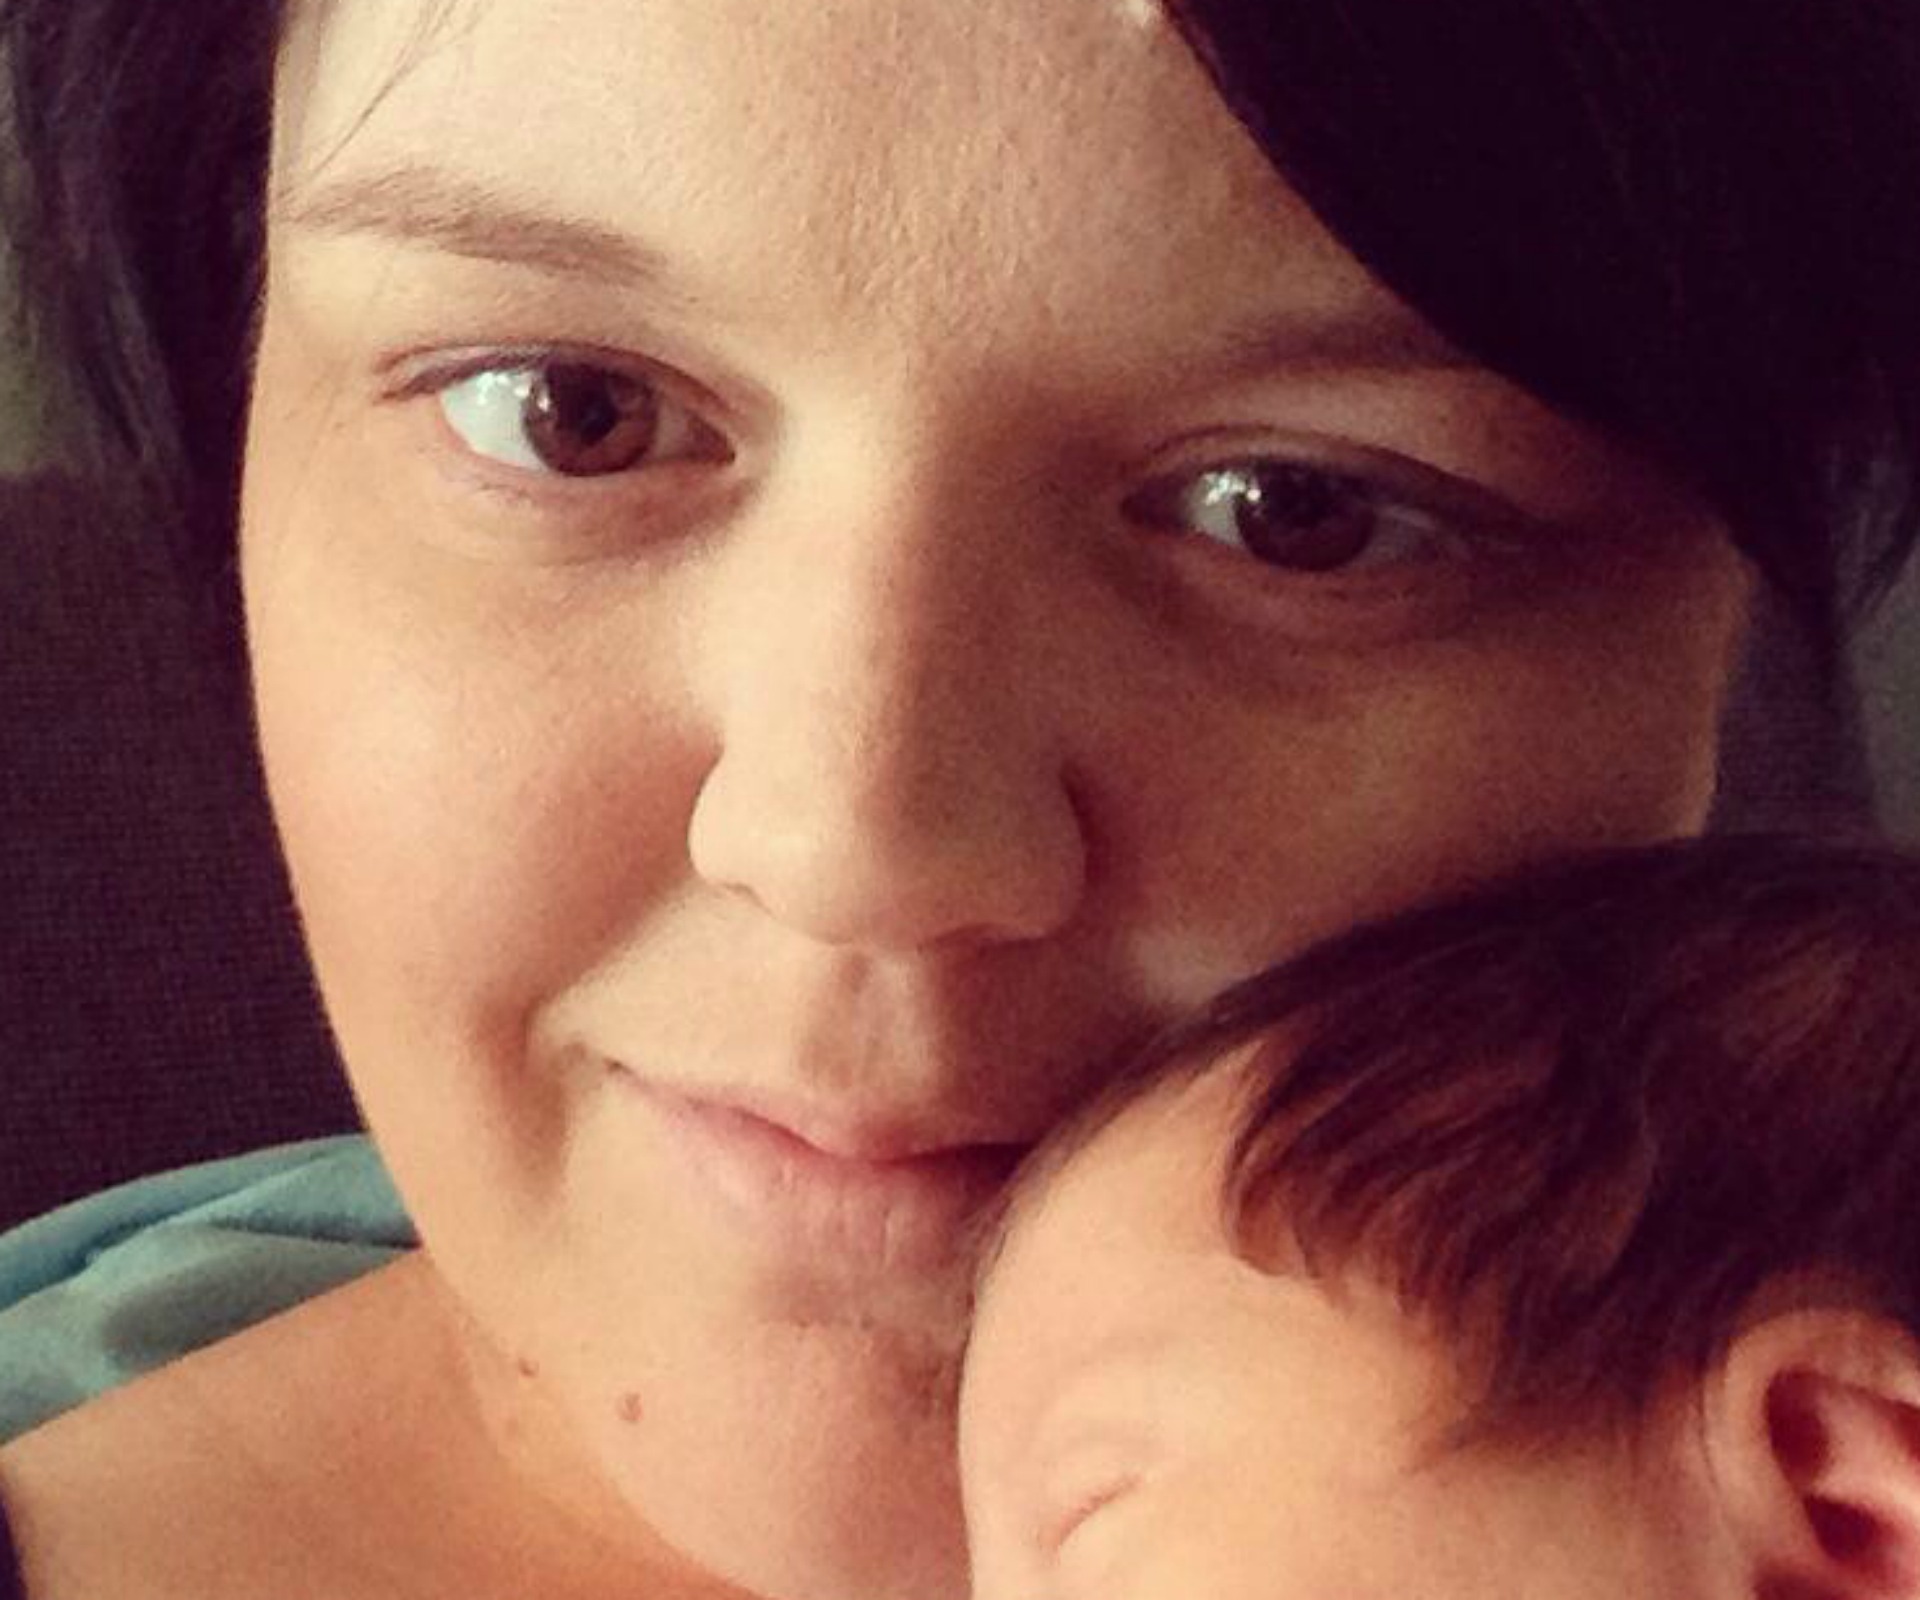 Aussie mum’s heartfelt plea to help find her phone containing only pictures of stillborn son